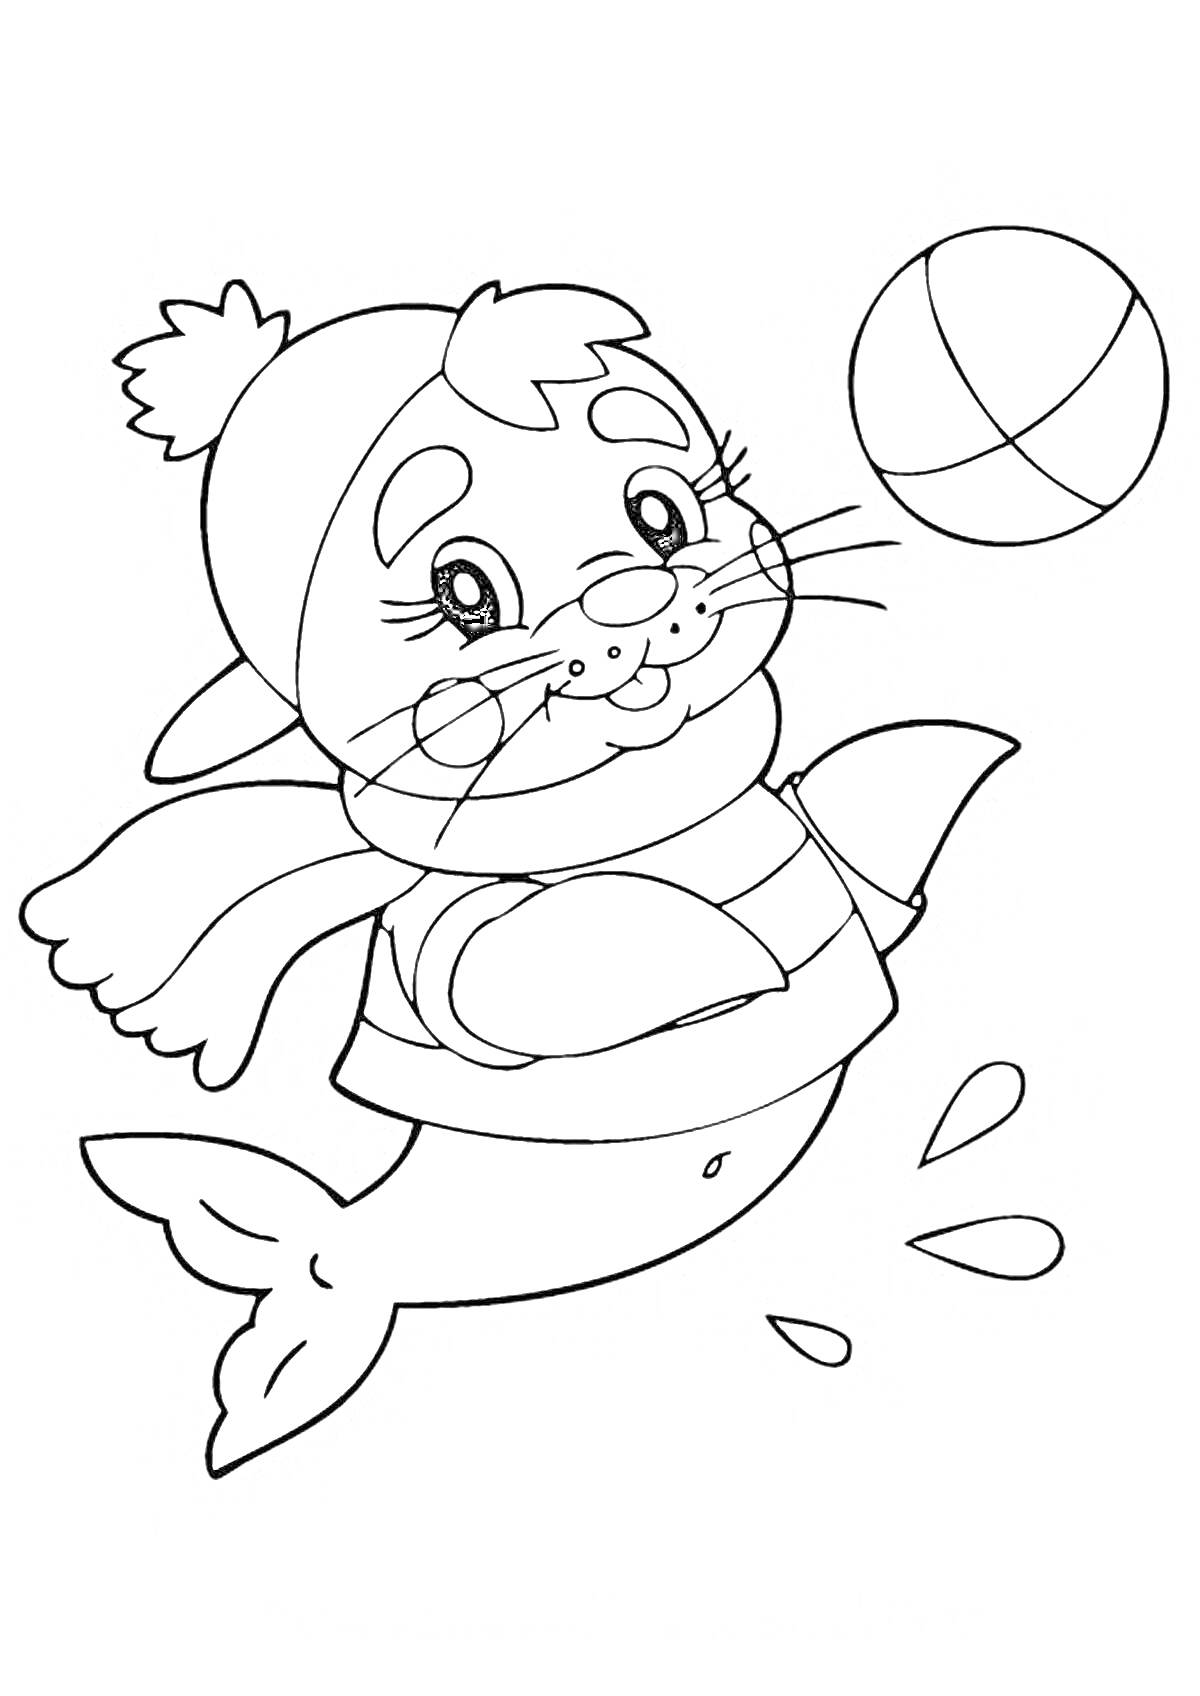 Тюлень в шапке и шарфе, играющий с мячом